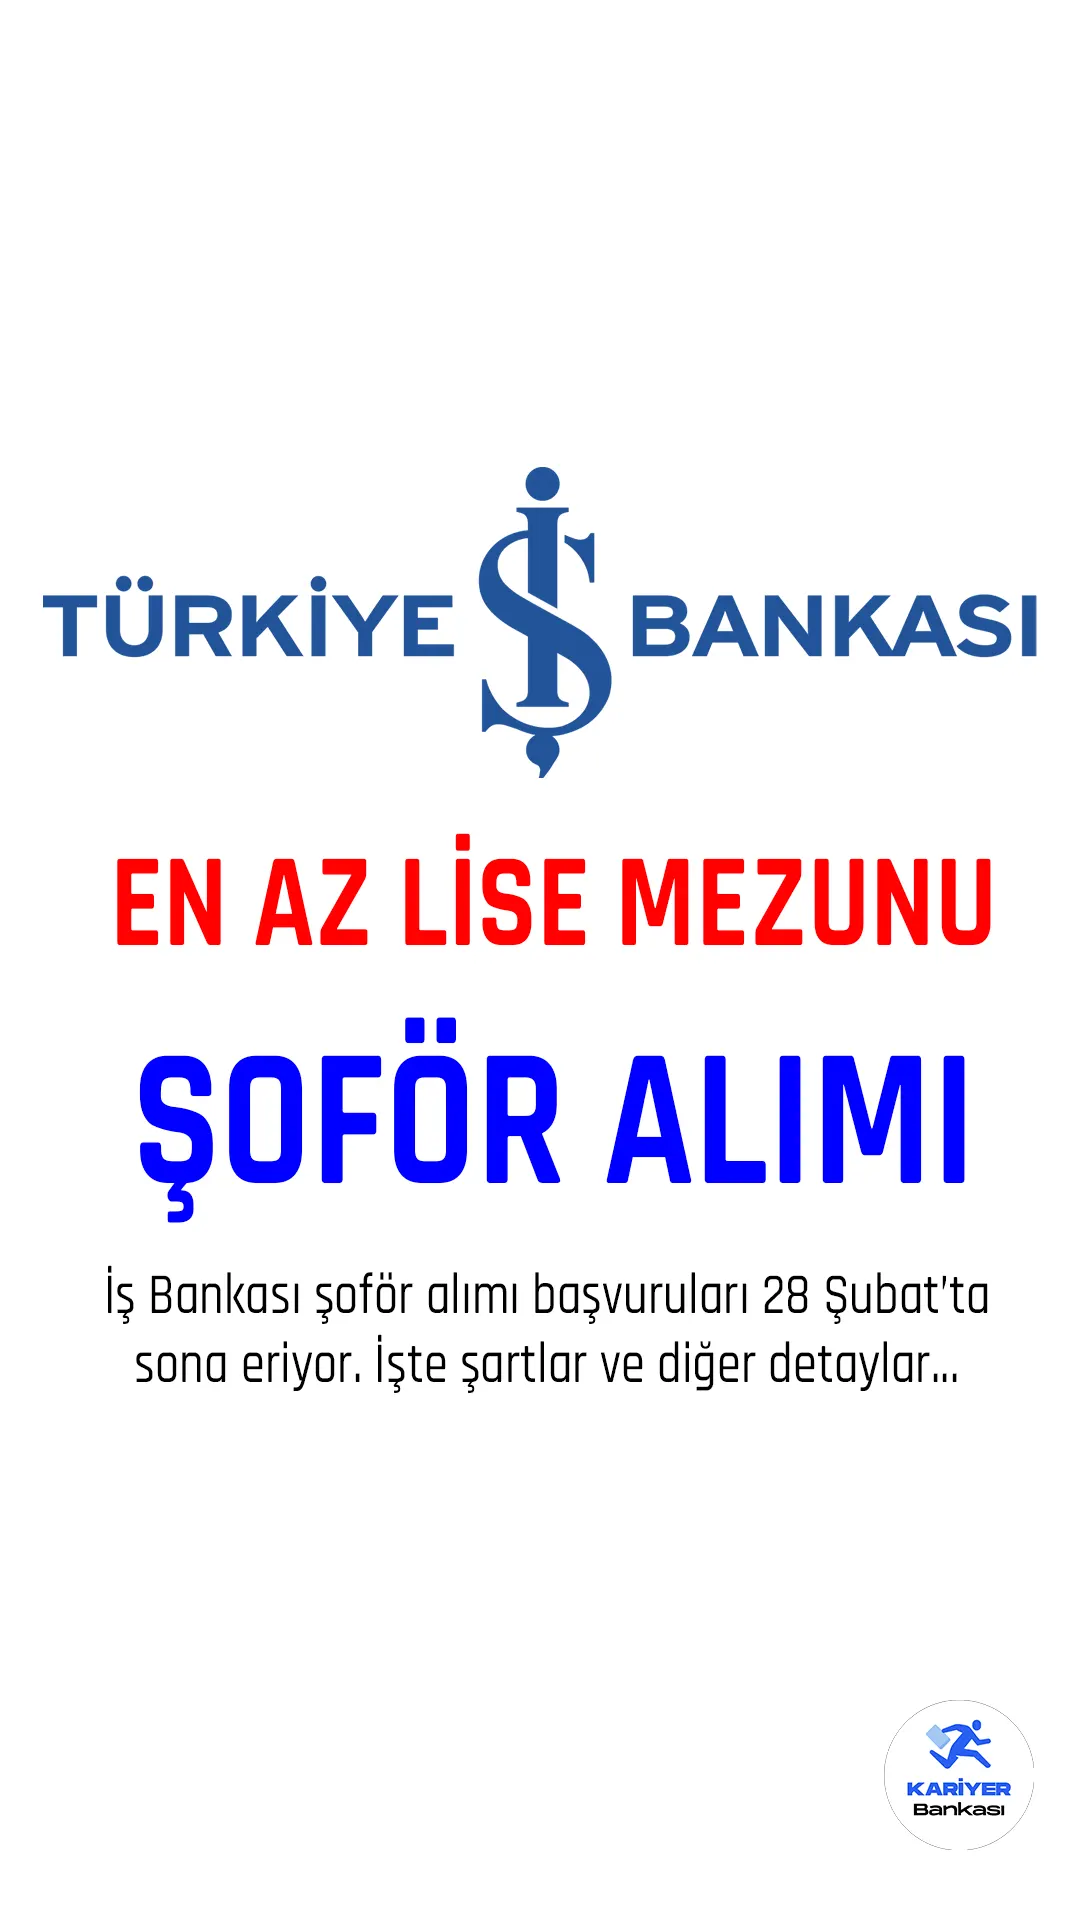 Türkiye İş Bankası şoför alımı başvurularında sona gelindi.Şoför alımı başvuru şartları, ikamet şartları ve başvuru yerine dair detaylar bu yazımızda.